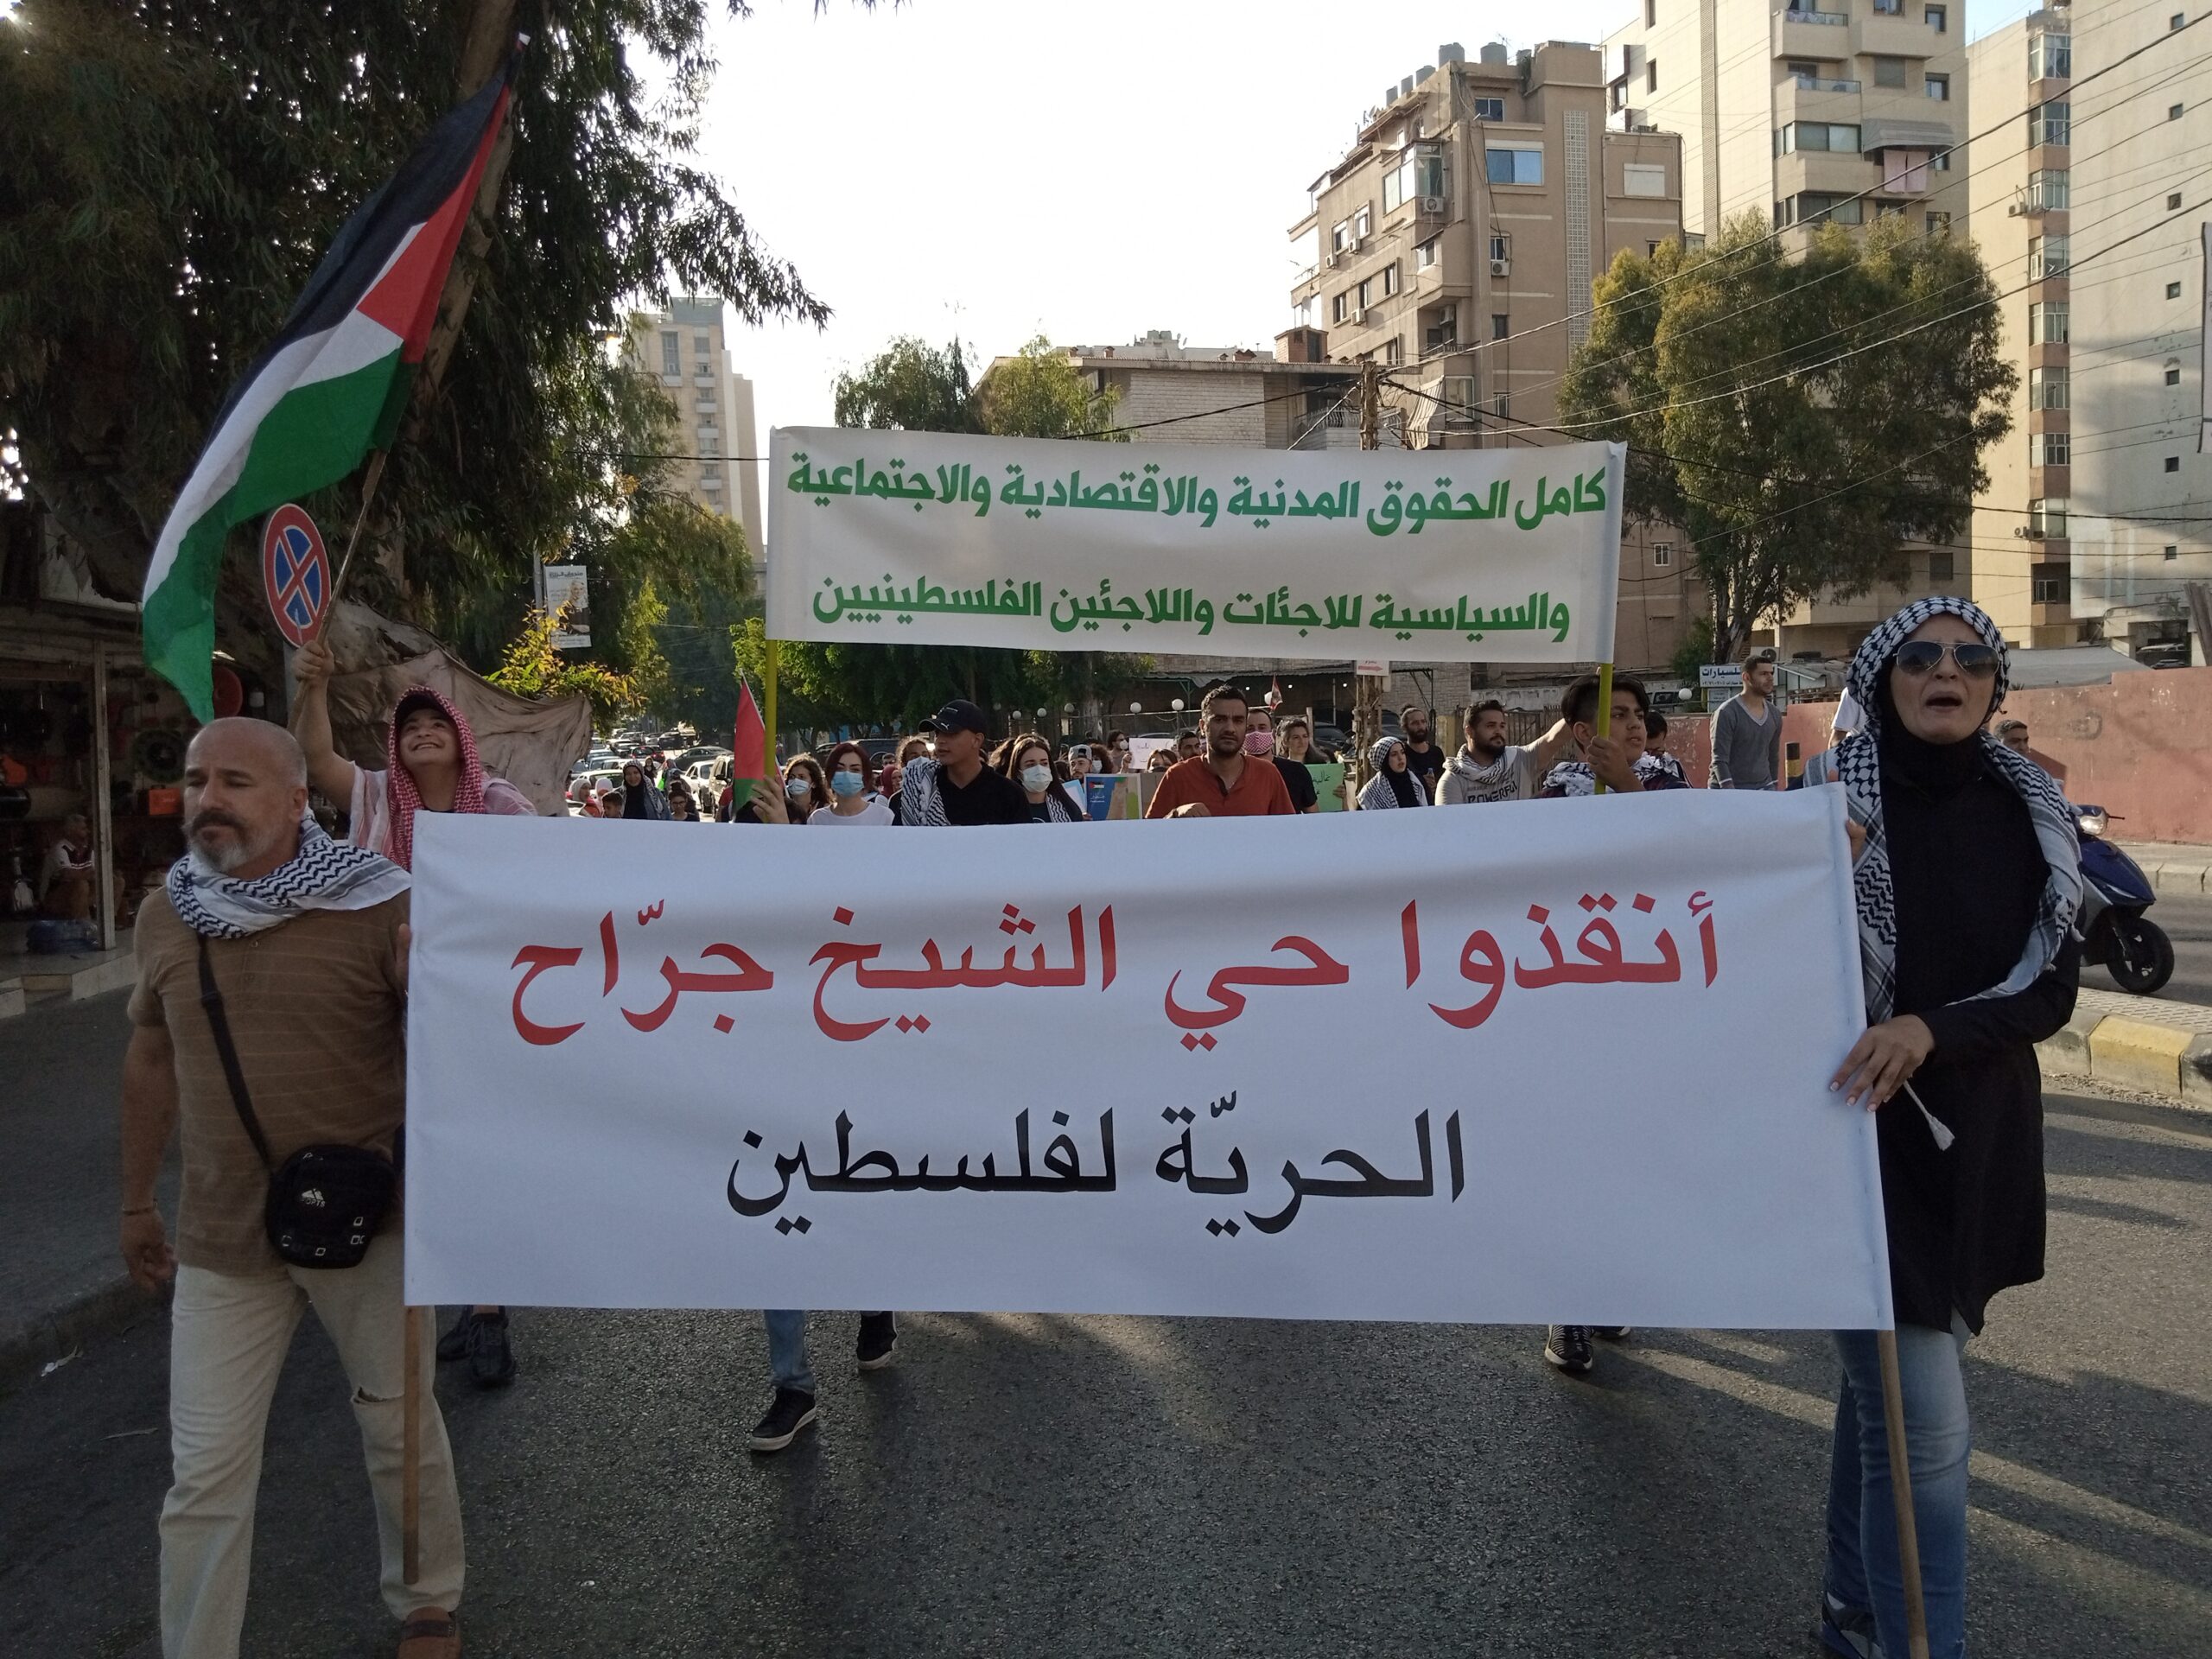 لبنان يتضامن مع فلسطين في شتّى الميادين